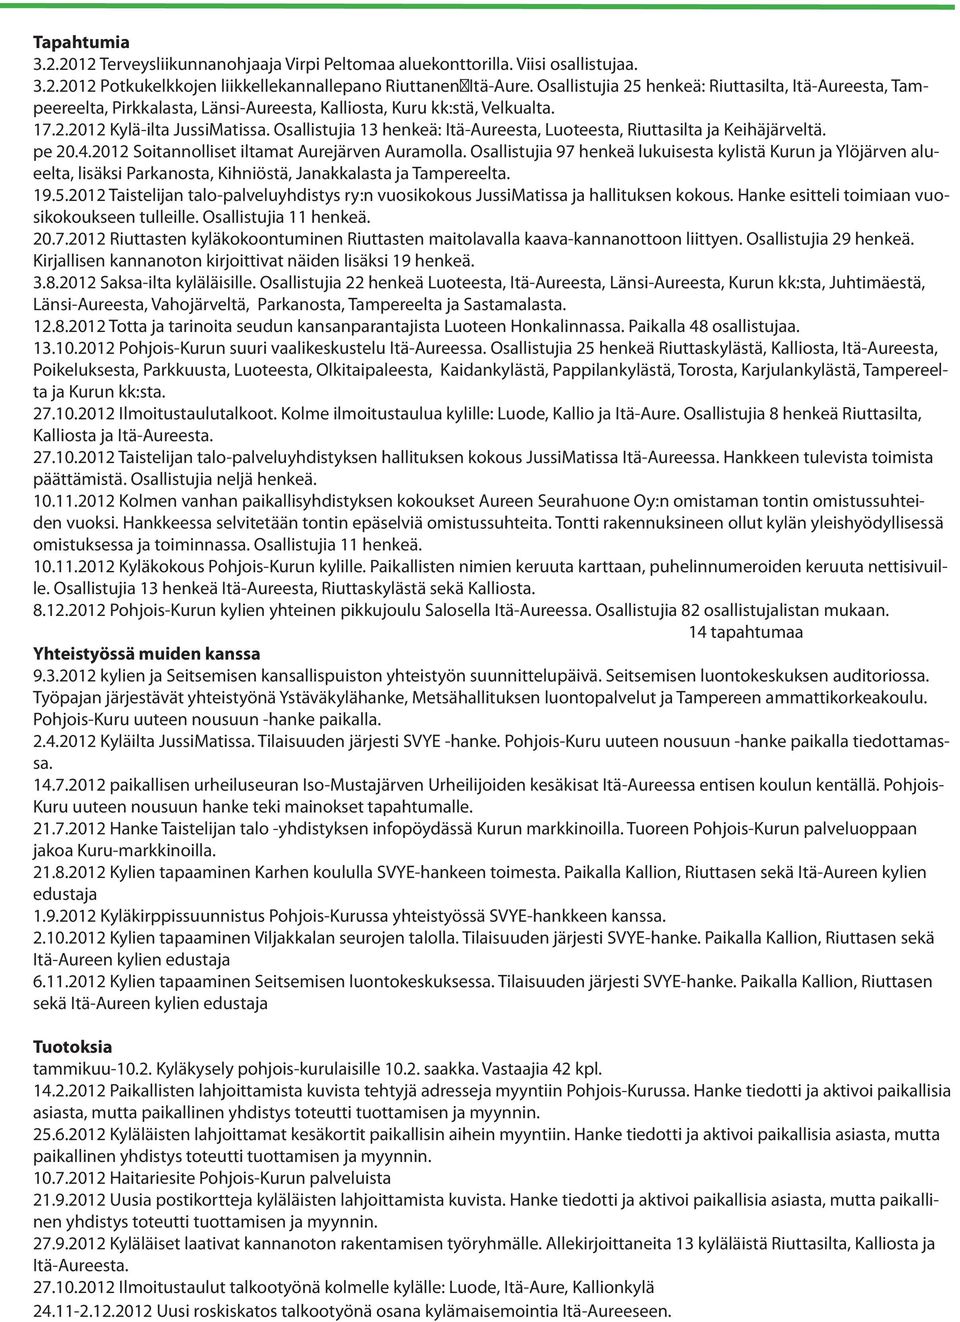 Osallistujia 13 henkeä: Itä-Aureesta, Luoteesta, Riuttasilta ja Keihäjärveltä. pe 20.4.2012 Soitannolliset iltamat Aurejärven Auramolla.